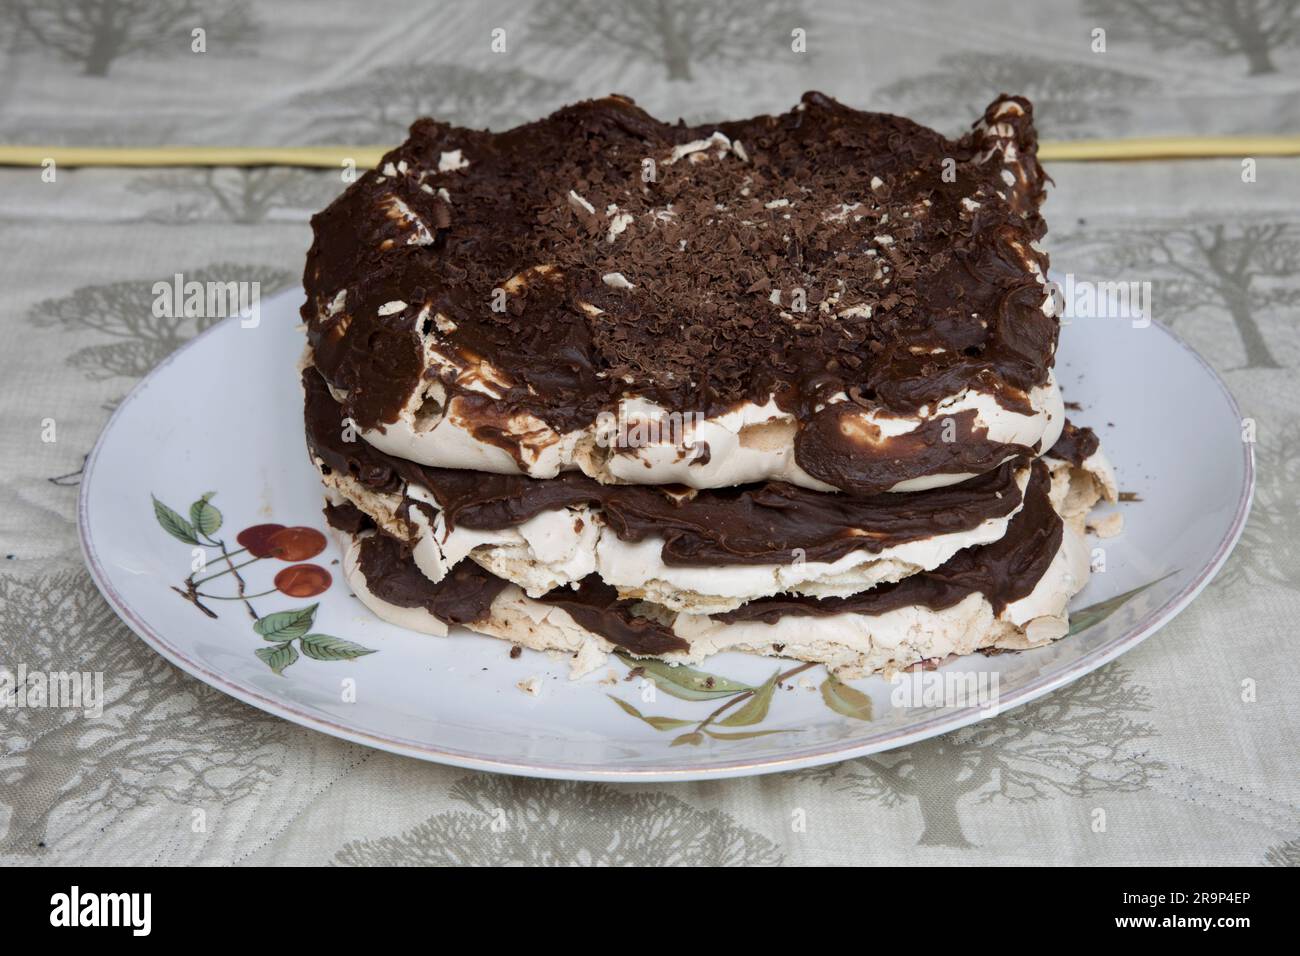 Chocolate coffee gateau cake uncuton decoratibe plate Stock Photo